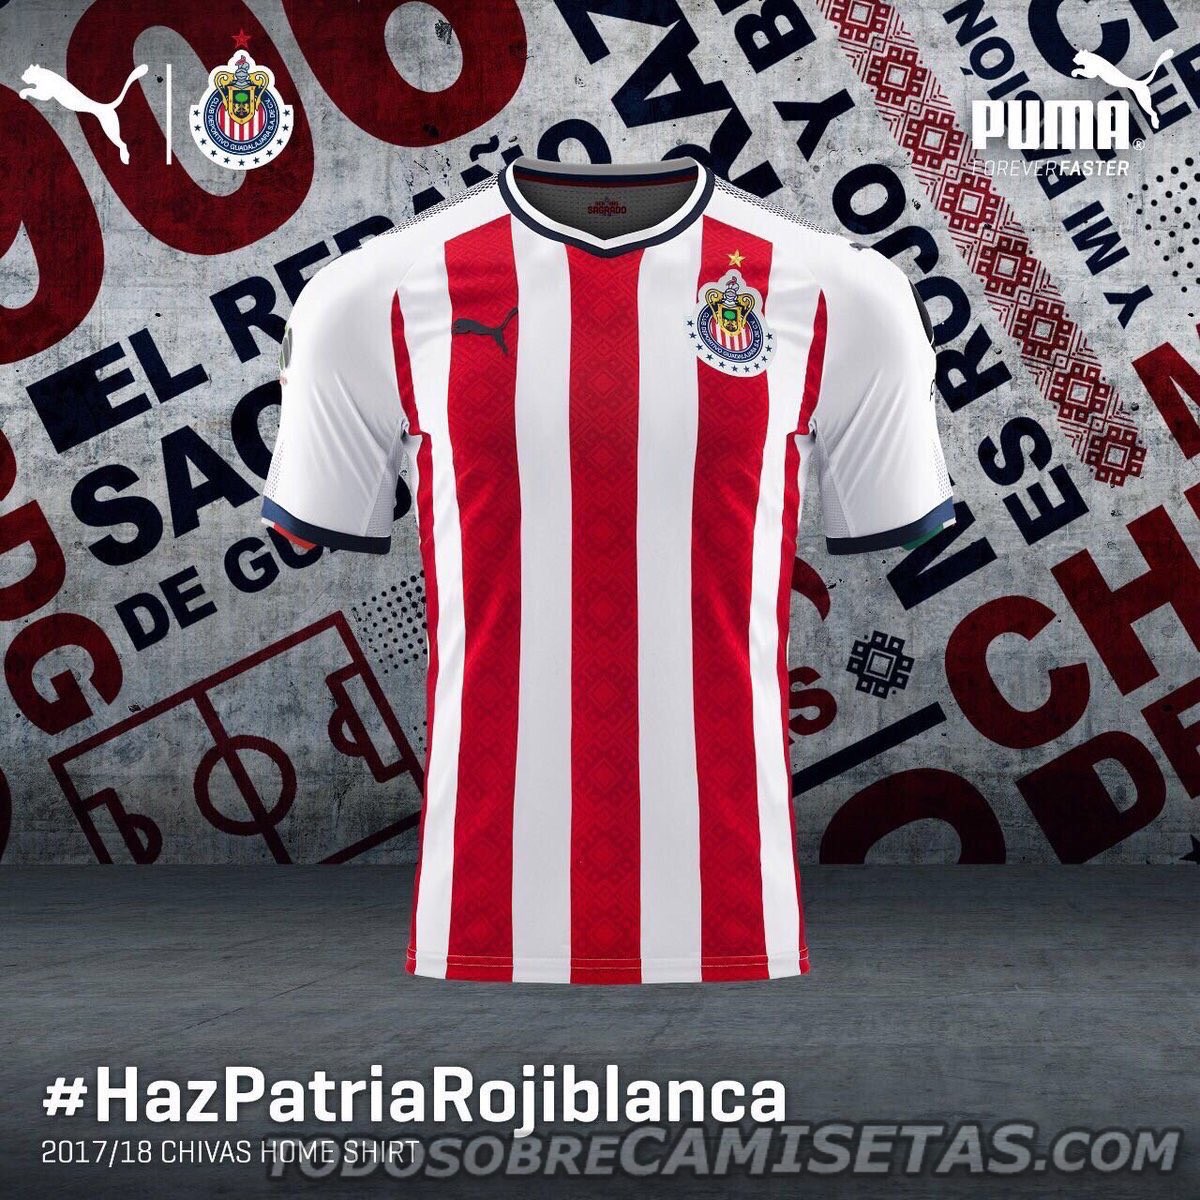 Camiseta local PUMA de Chivas 2017-18